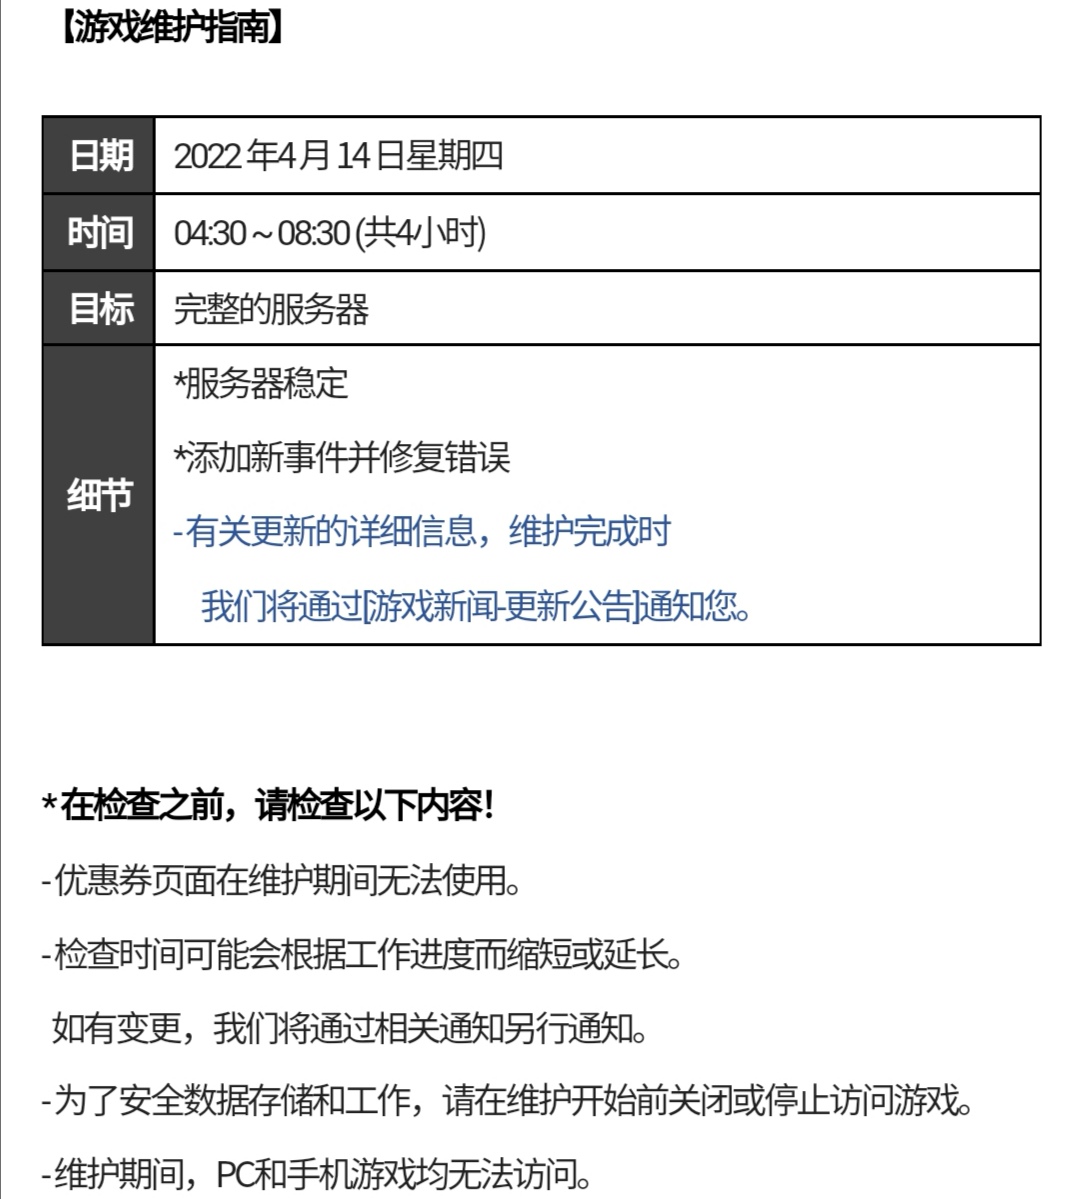 韩服将于4月14日03∶30至07∶30（北京时间）维护更新